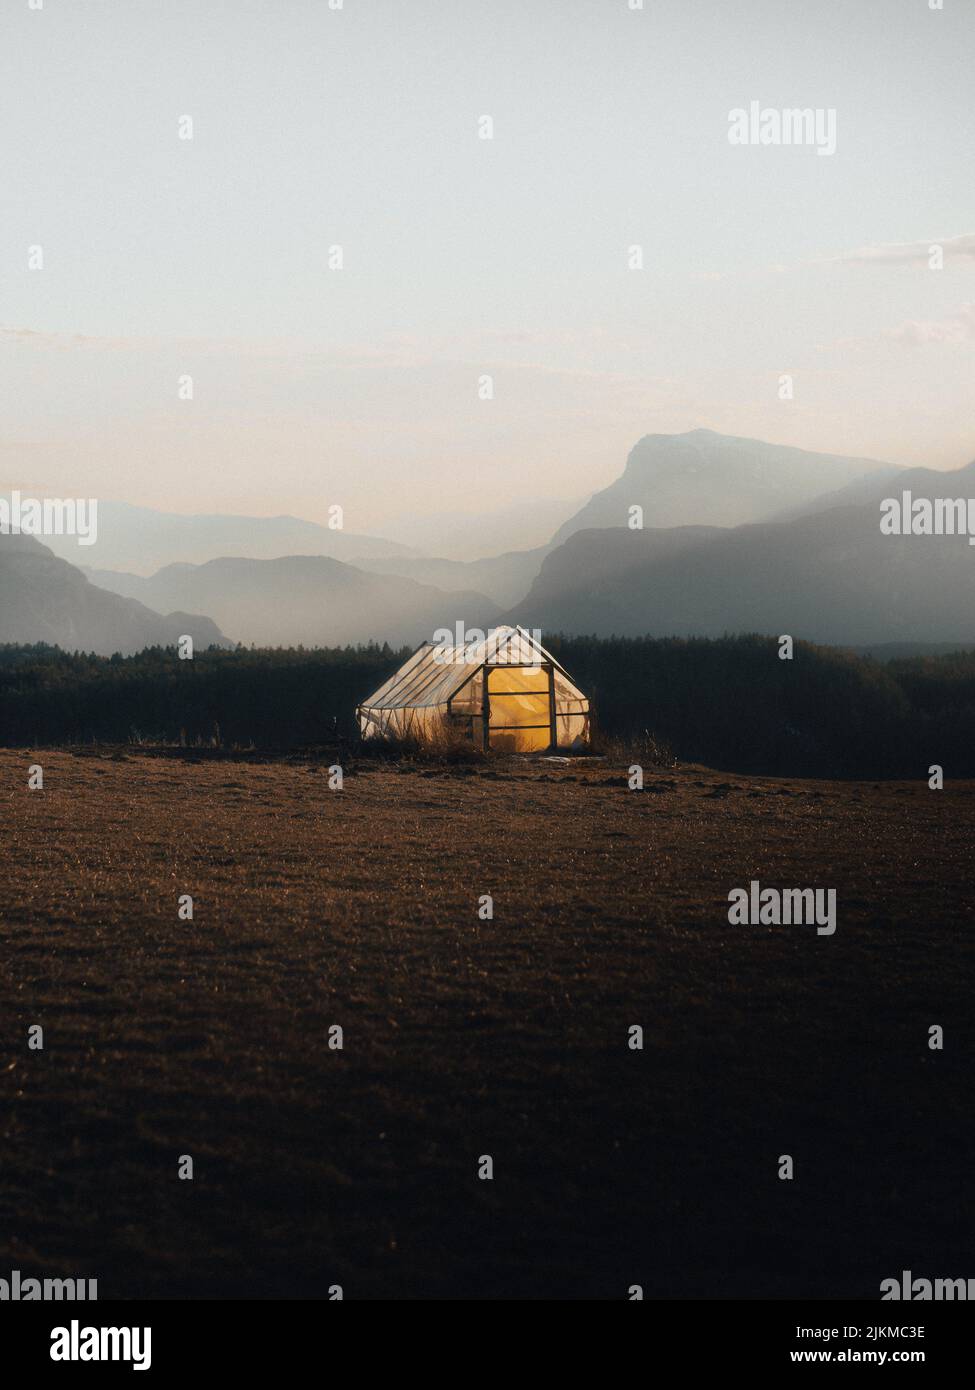 Una tenda illuminata al centro di un campo contro un cielo nebbioso Foto Stock